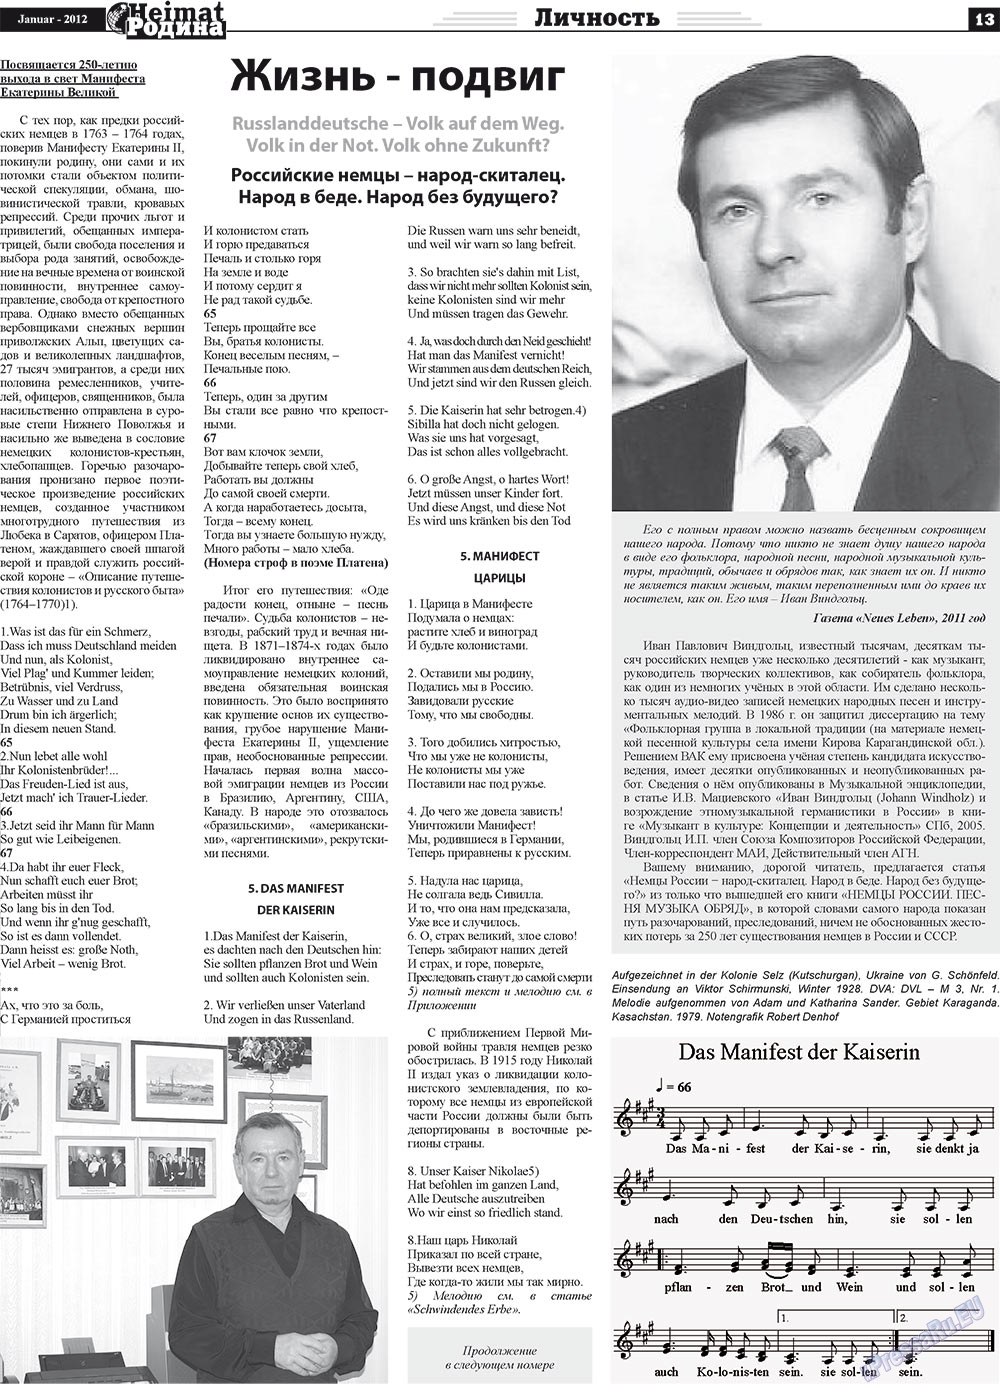 Heimat-Родина (газета). 2012 год, номер 1, стр. 13